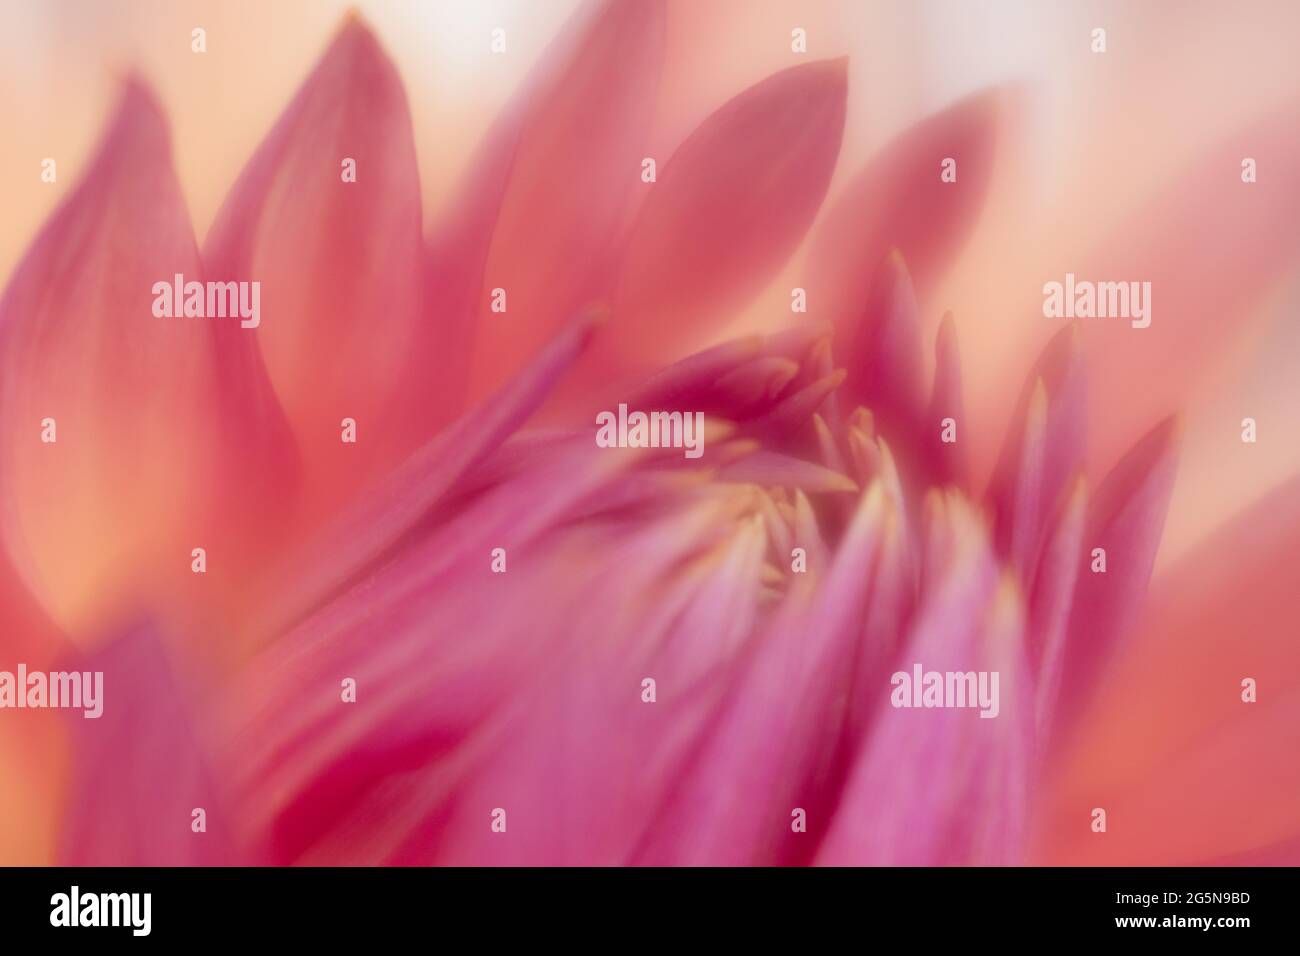 Rosafarbene Pastell-Dahlien, detailreiche Blütenblätter mit Makro-Nahaufnahmen des Blumenzentrums. Stockfoto